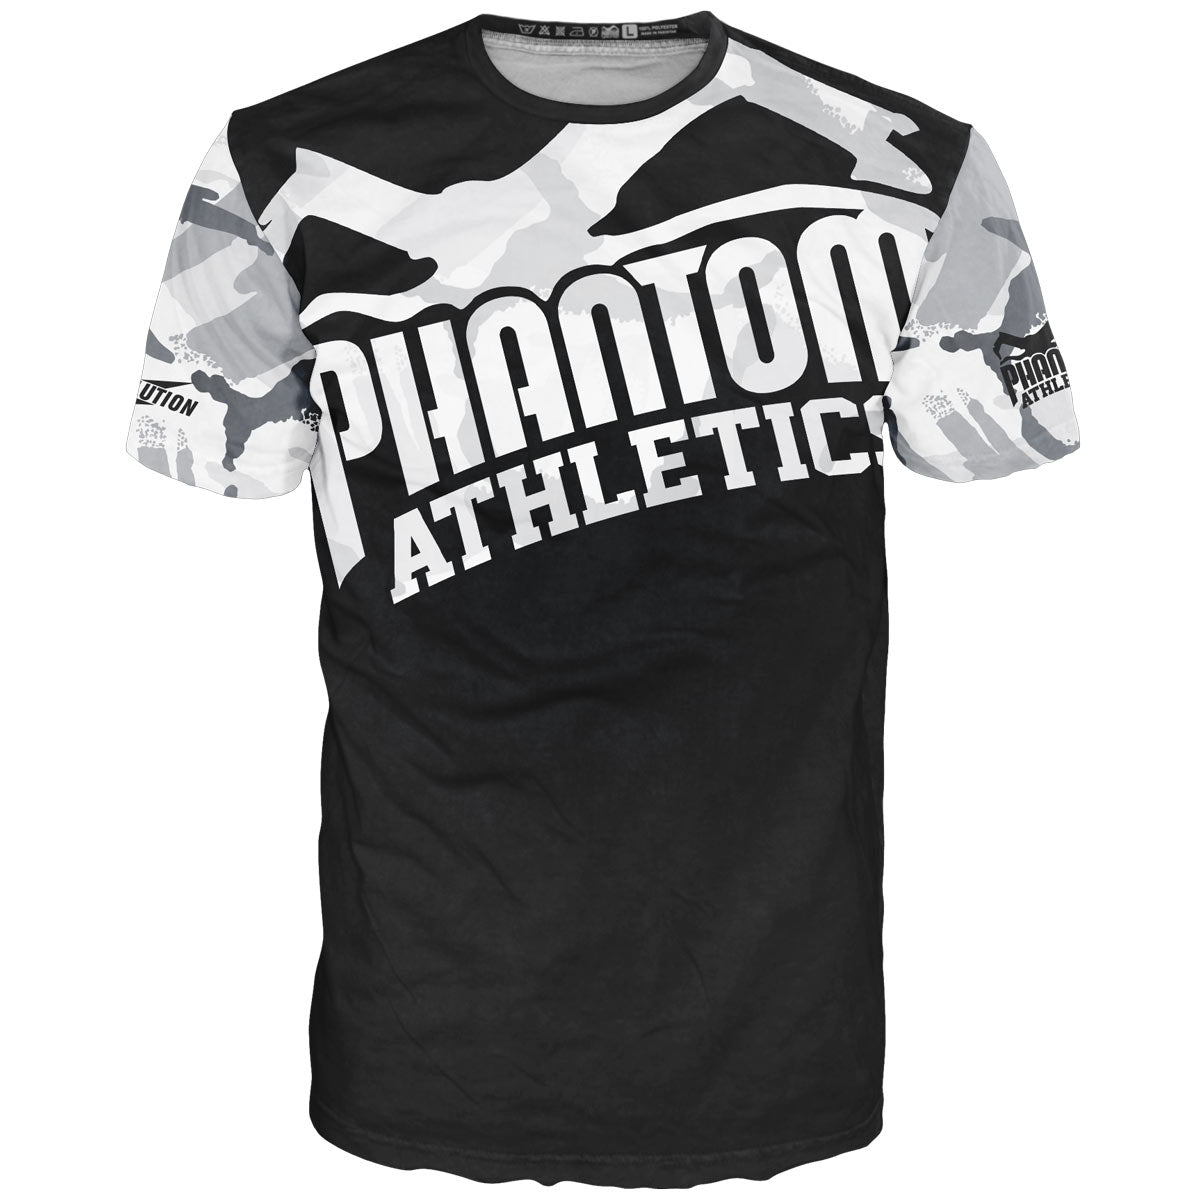 Phantom Kampfsport EVO træningstrøje i vinter/urban camo look. Åndbar præstationstræningstrøje til MMA, Muay Thai, BJJ og kickboksning.